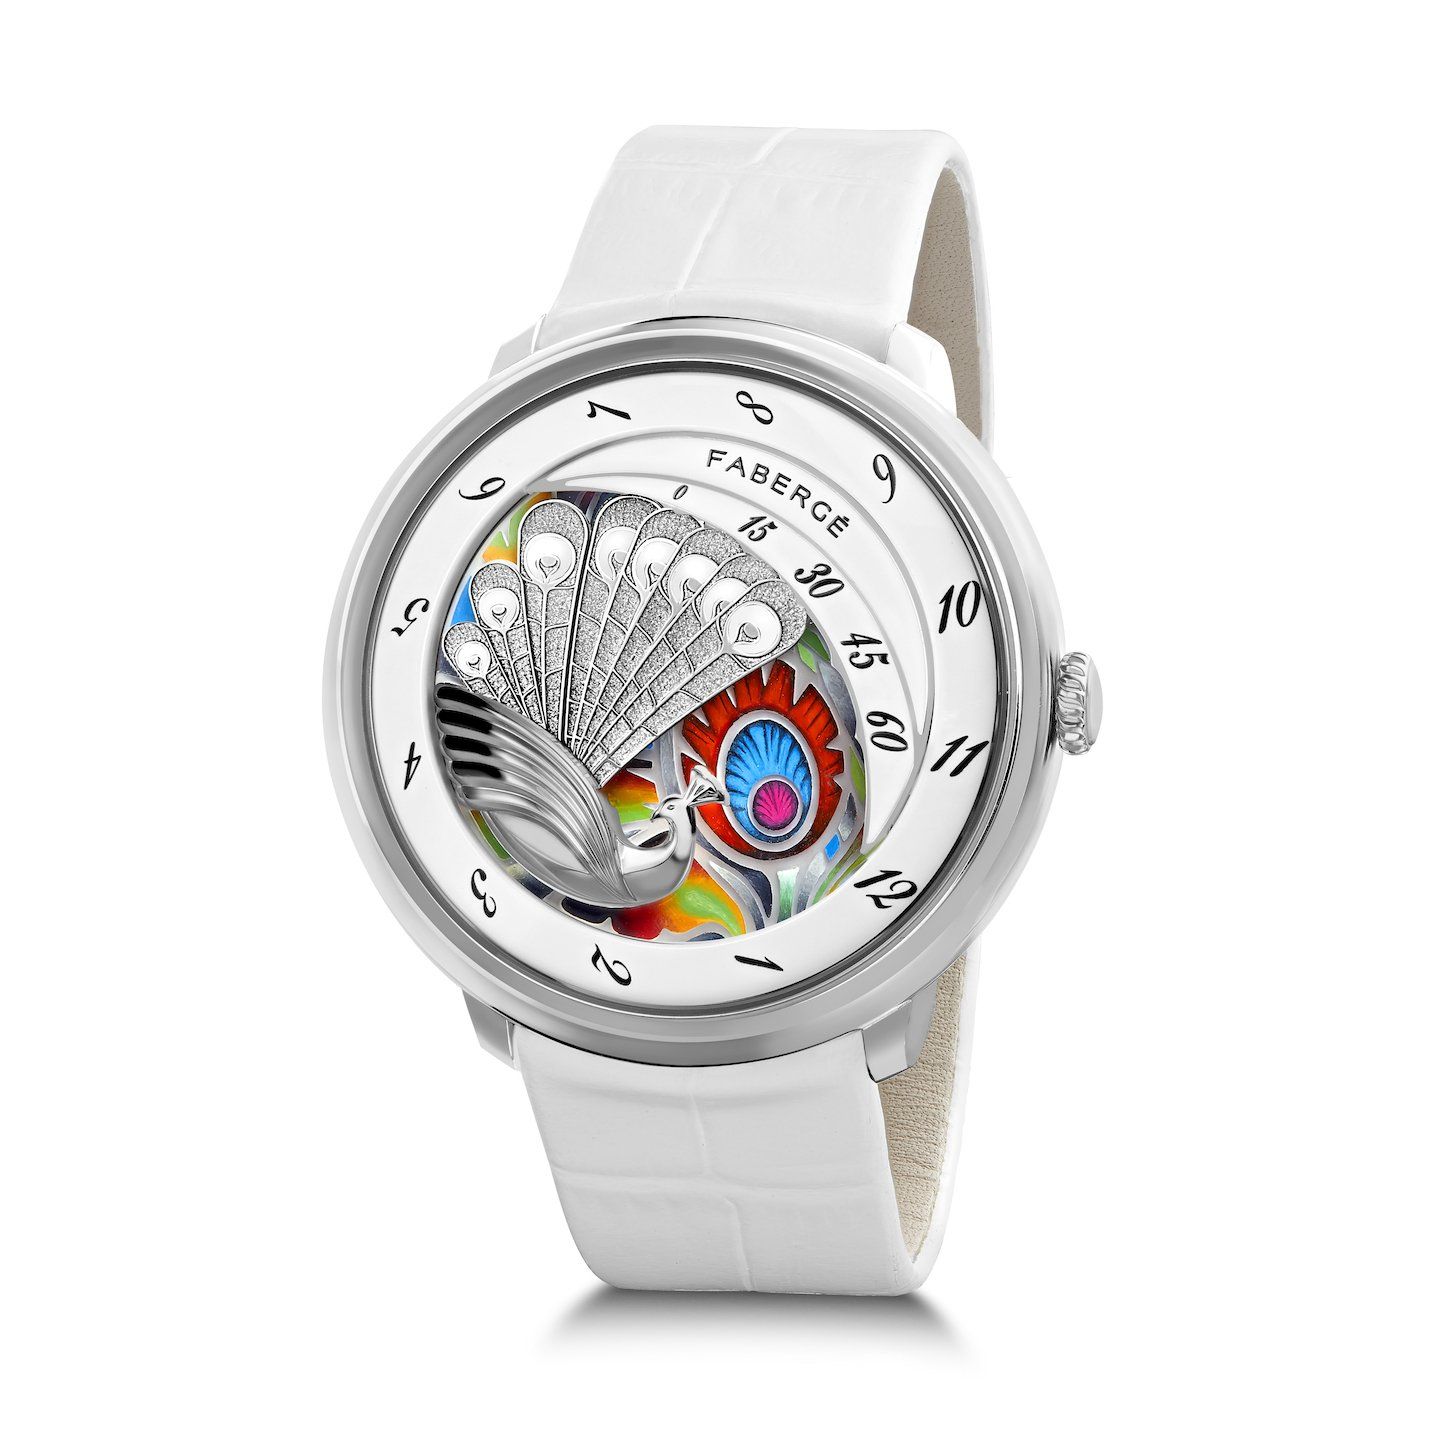 Fabergé’s New Compliquée Peacock Watch